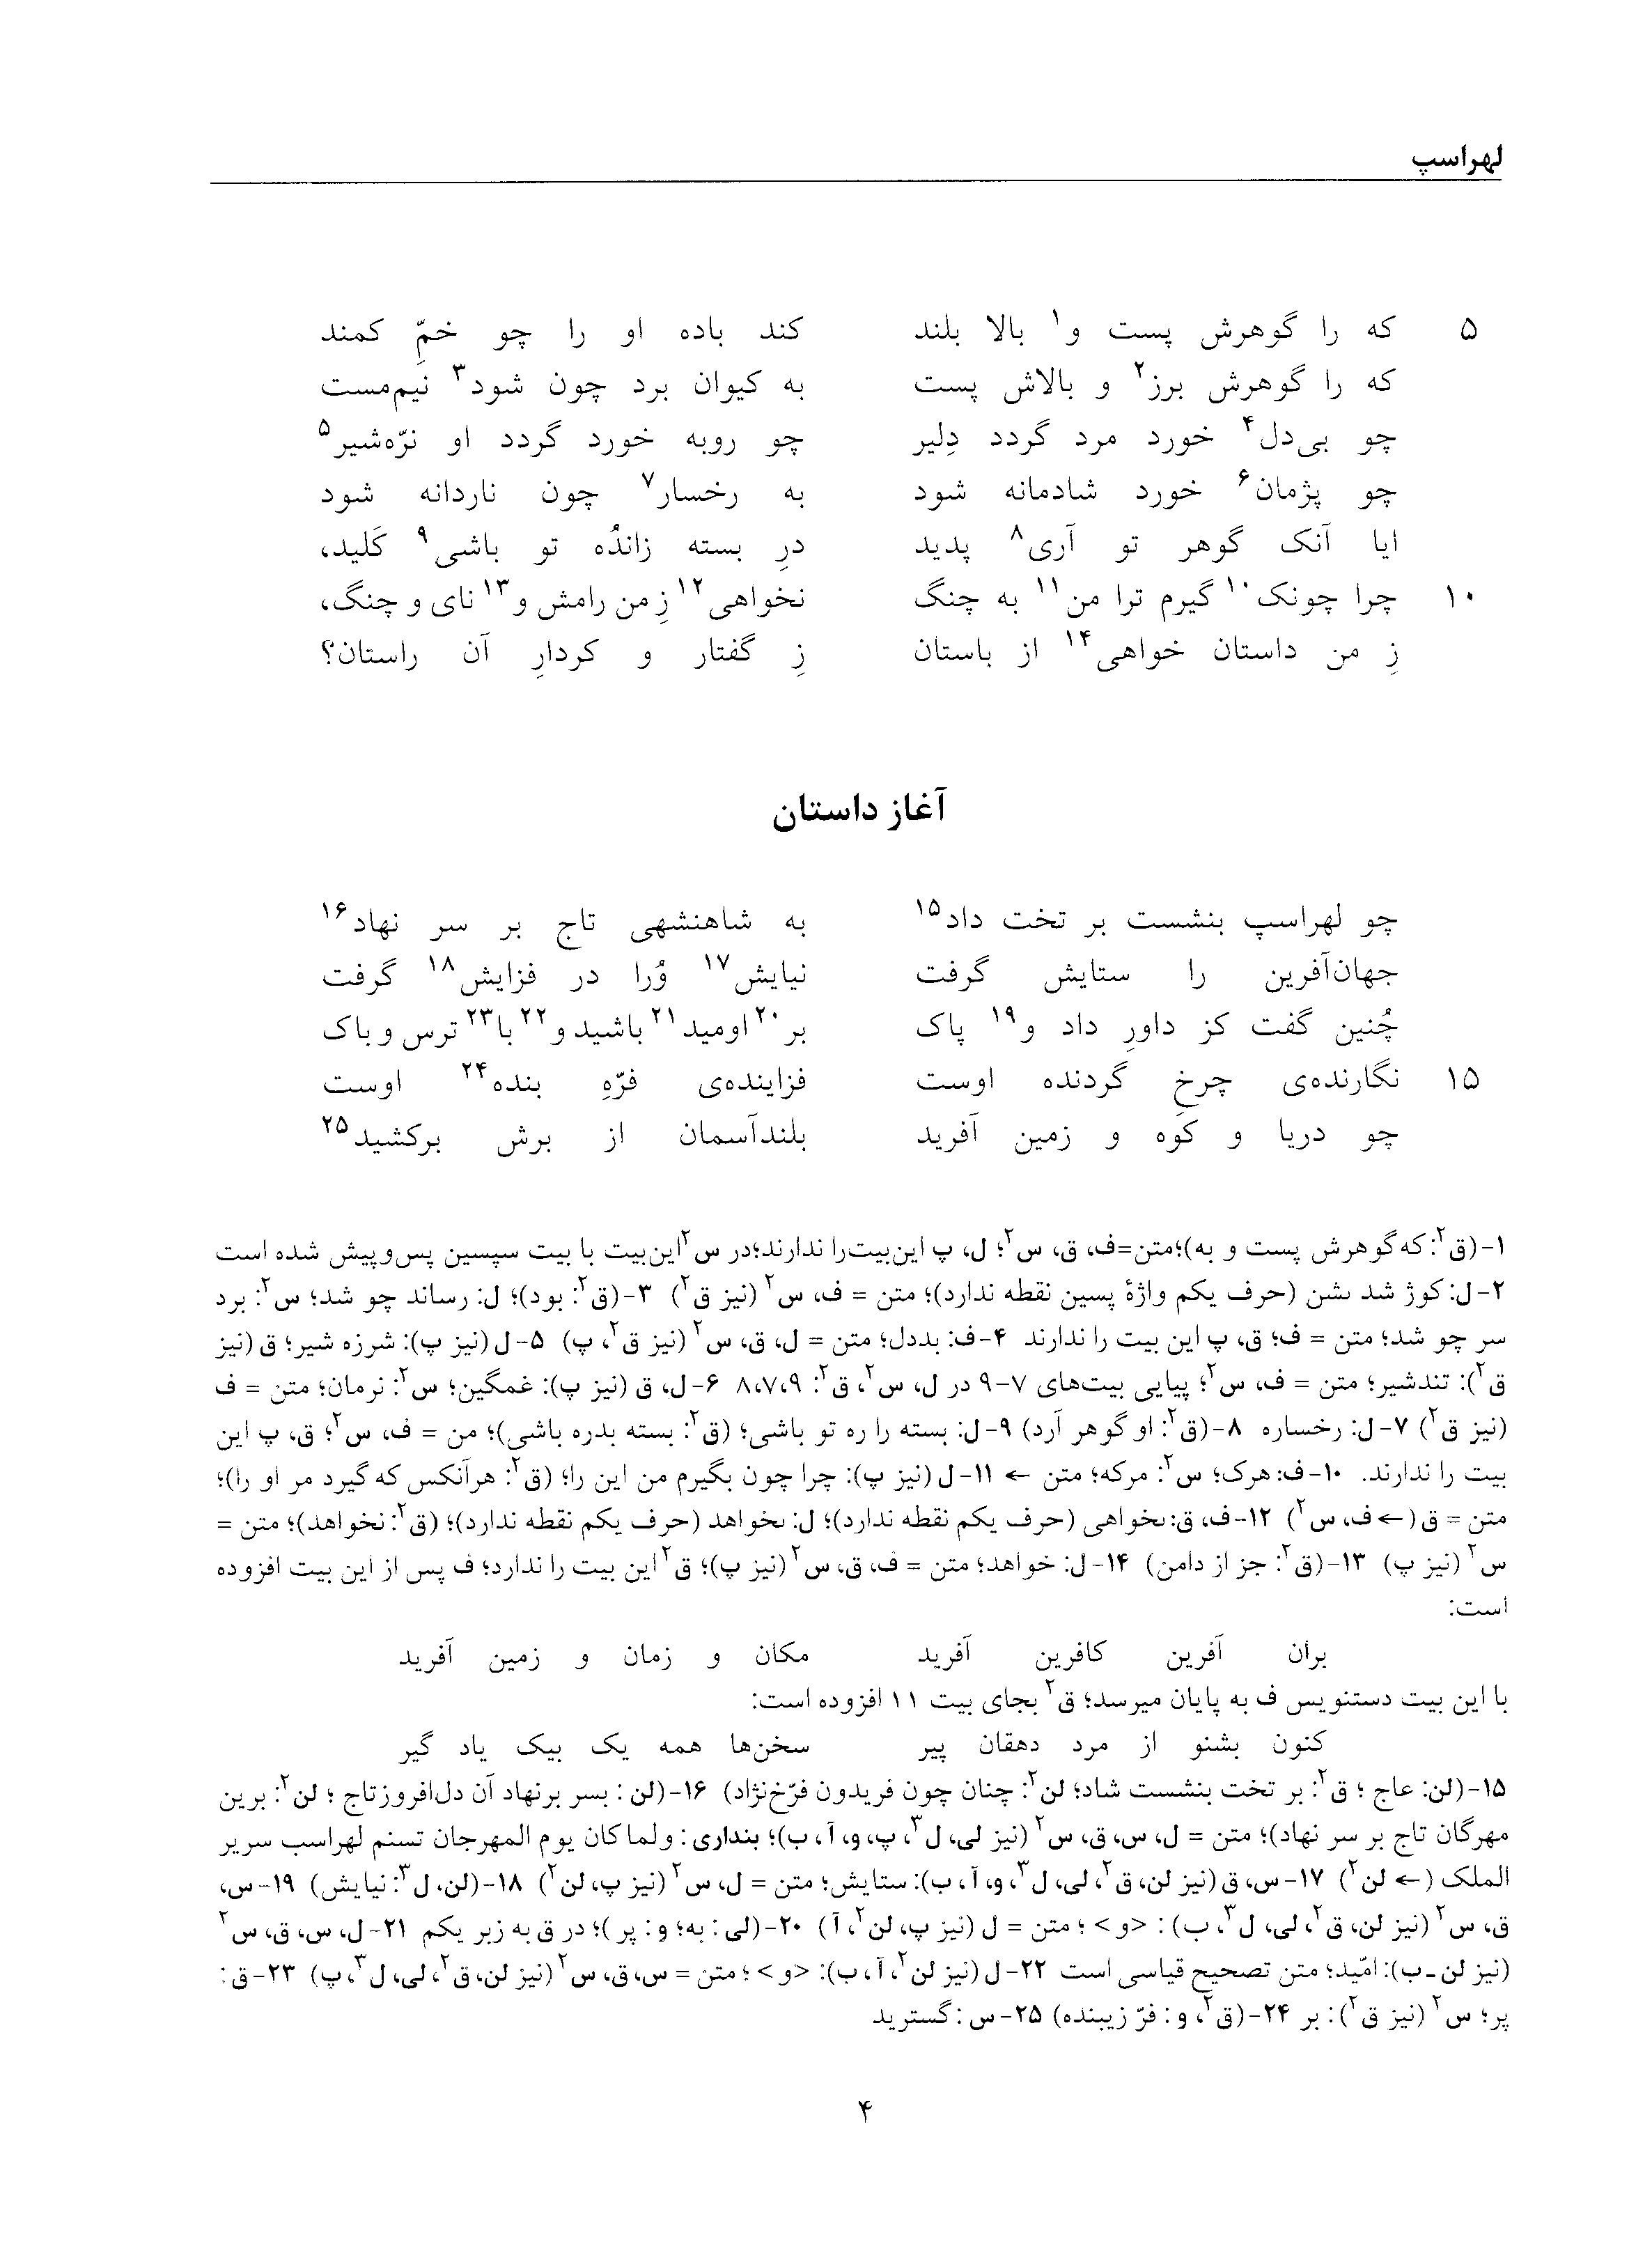 vol. 5, p. 4